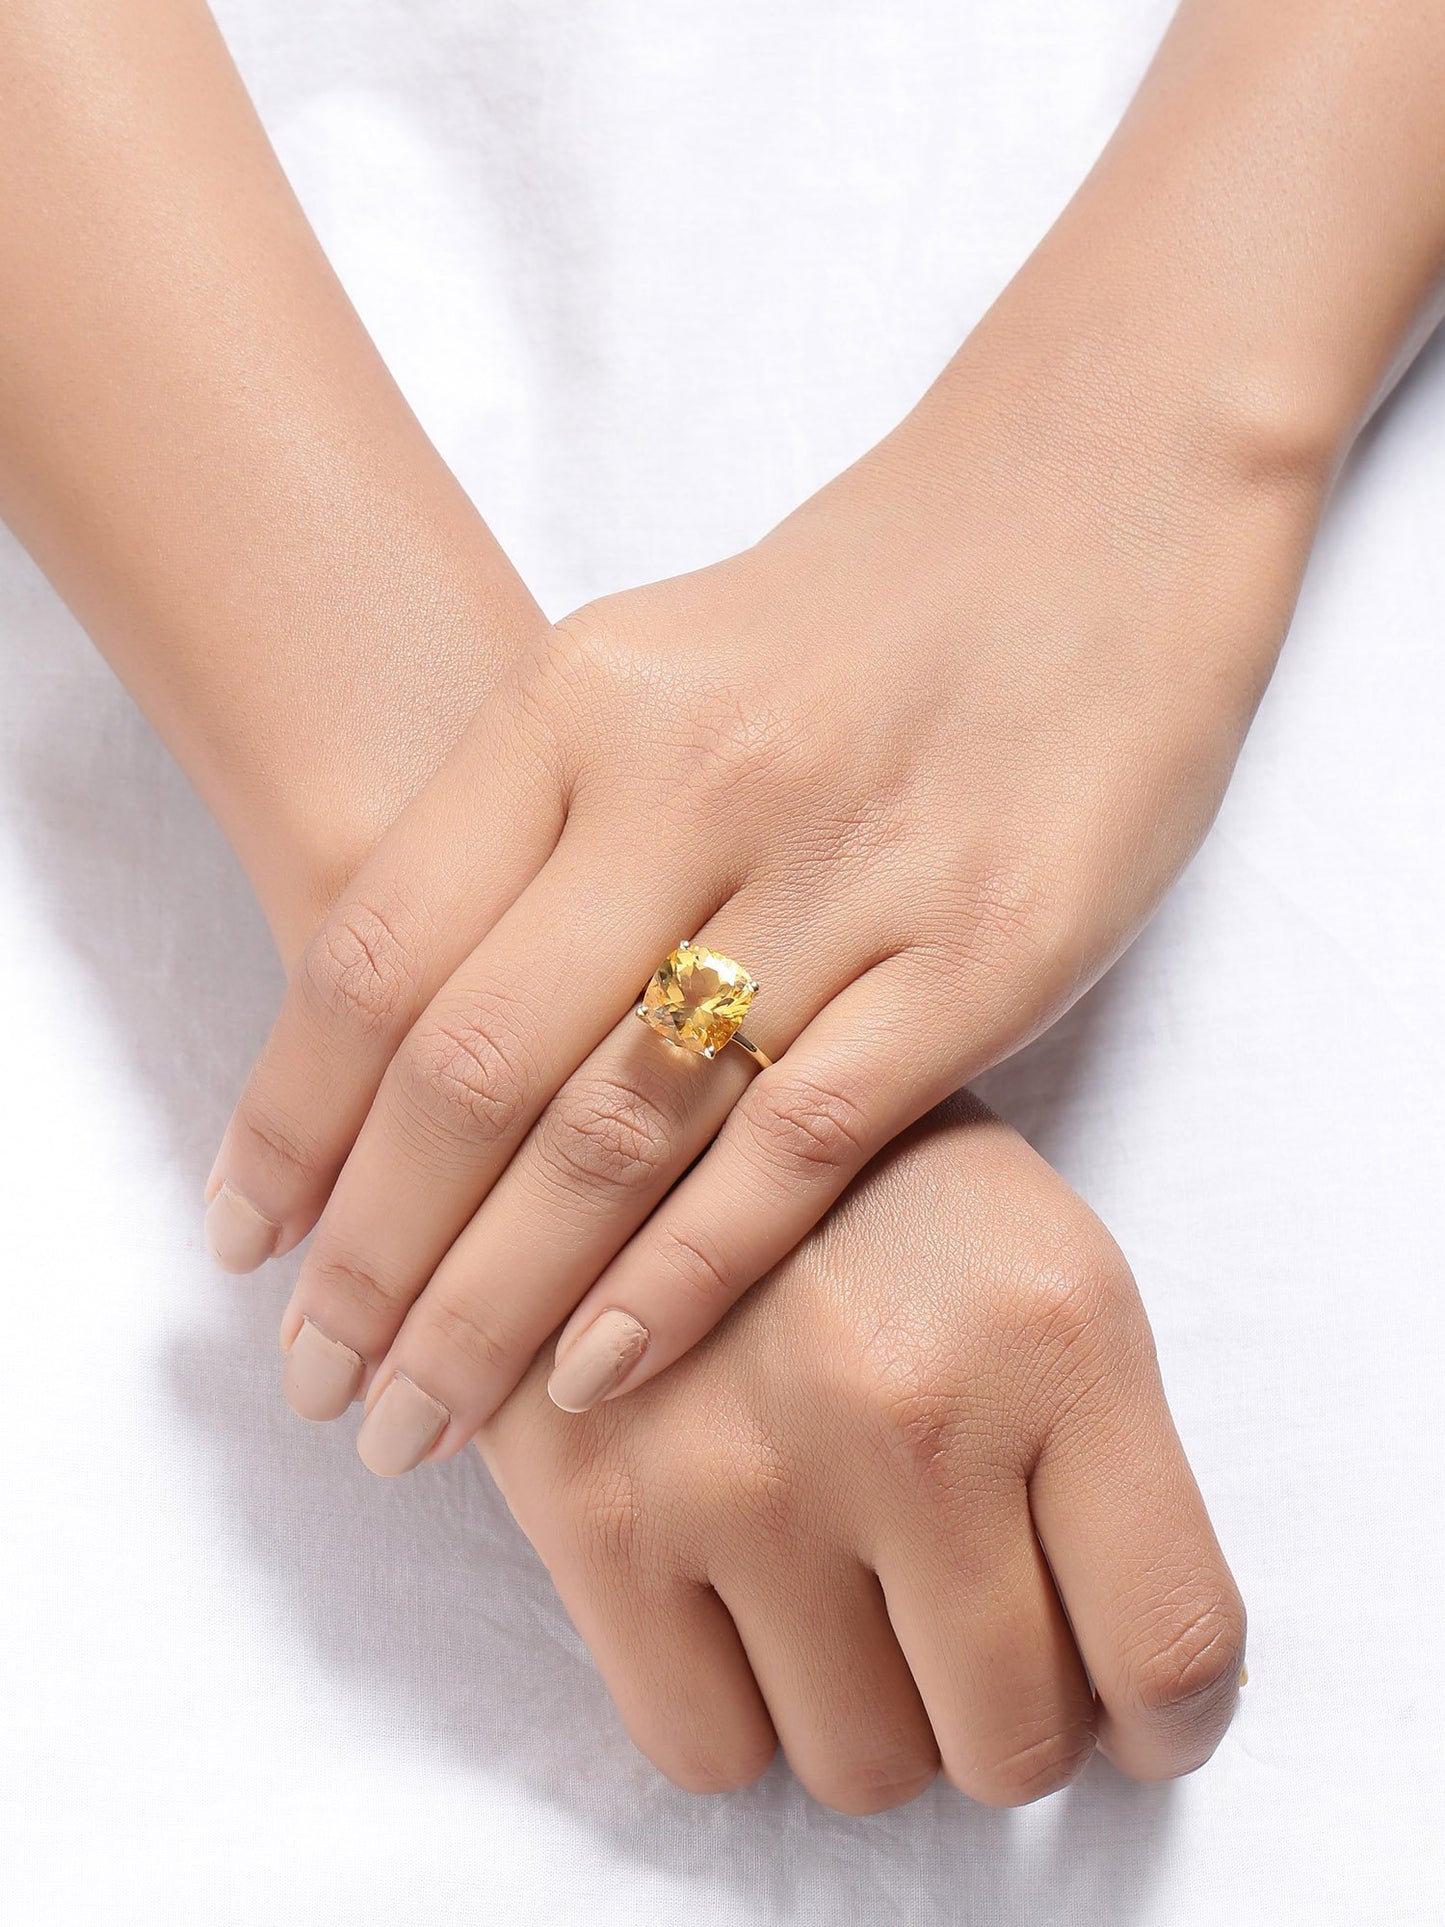 Tiramisu 5.85 Ct Citrine Solid 10k Yellow Gold Ring Jewelry